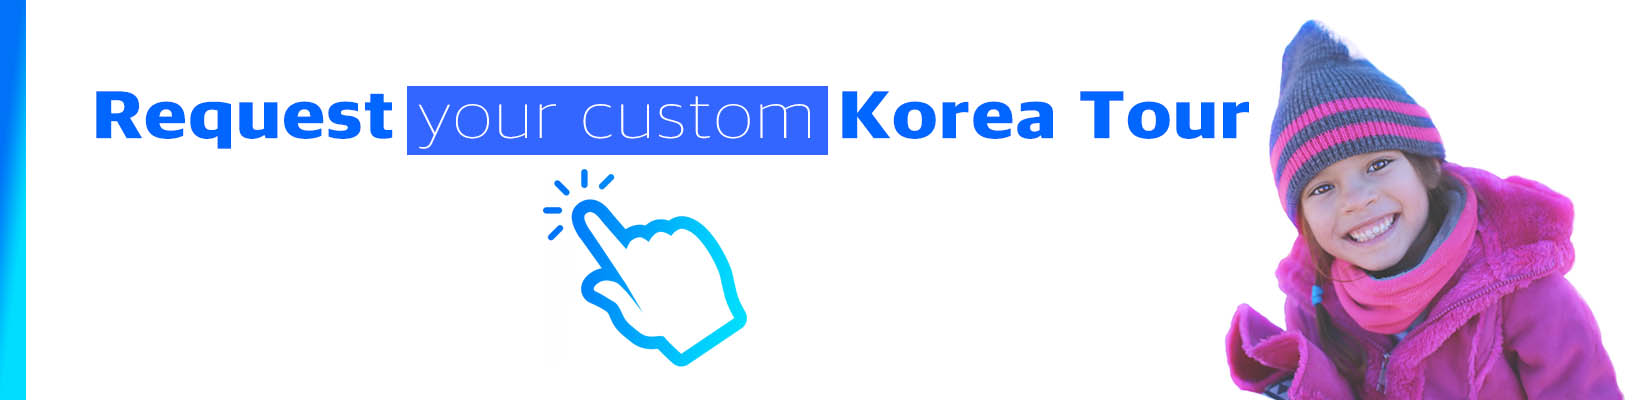 Request your custom Korea Tour